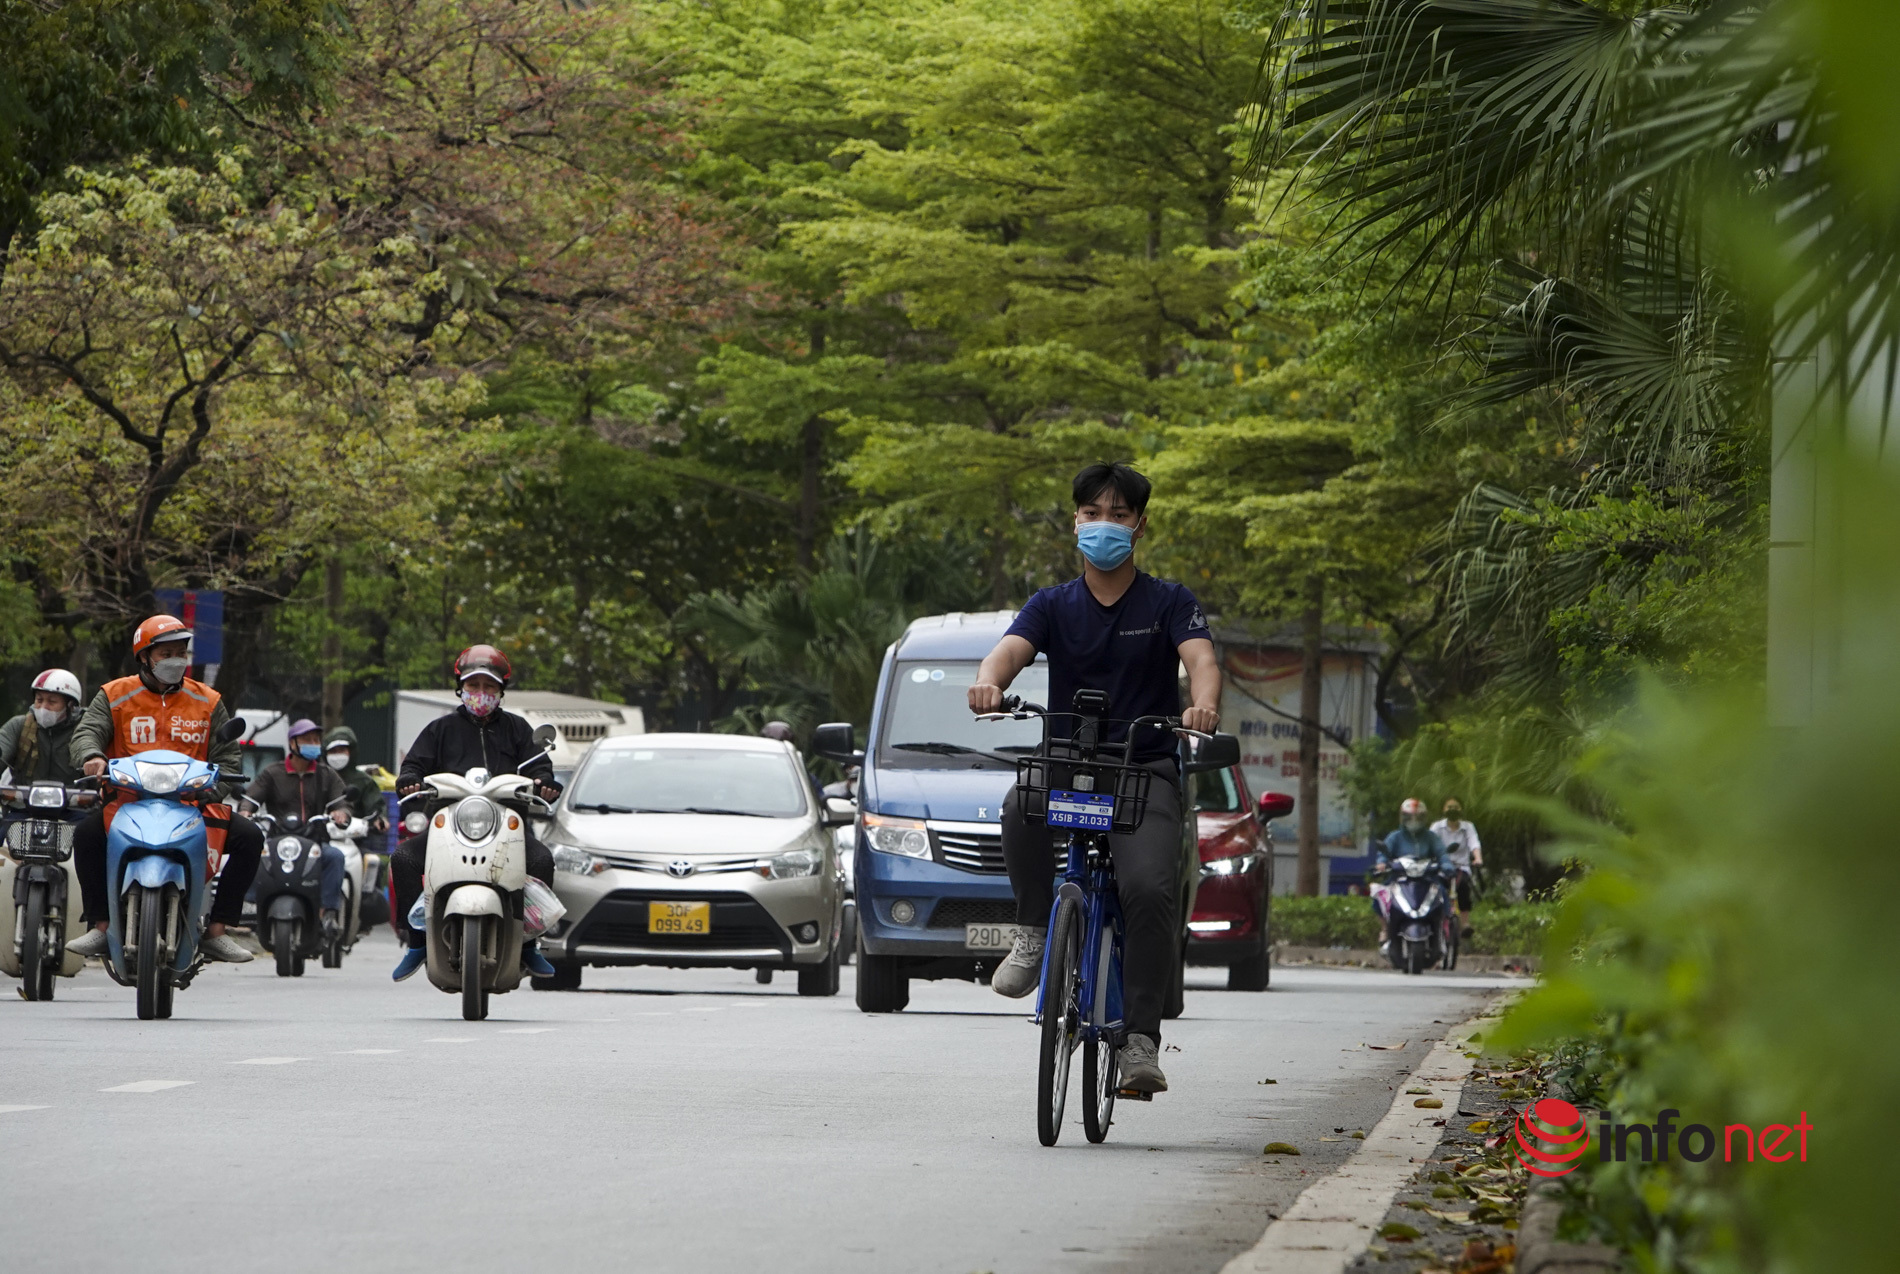 Cận cảnh chiếc xe đạp công cộng sắp được cho thuê giá 5000 đồng/30 phút ở Hà Nội